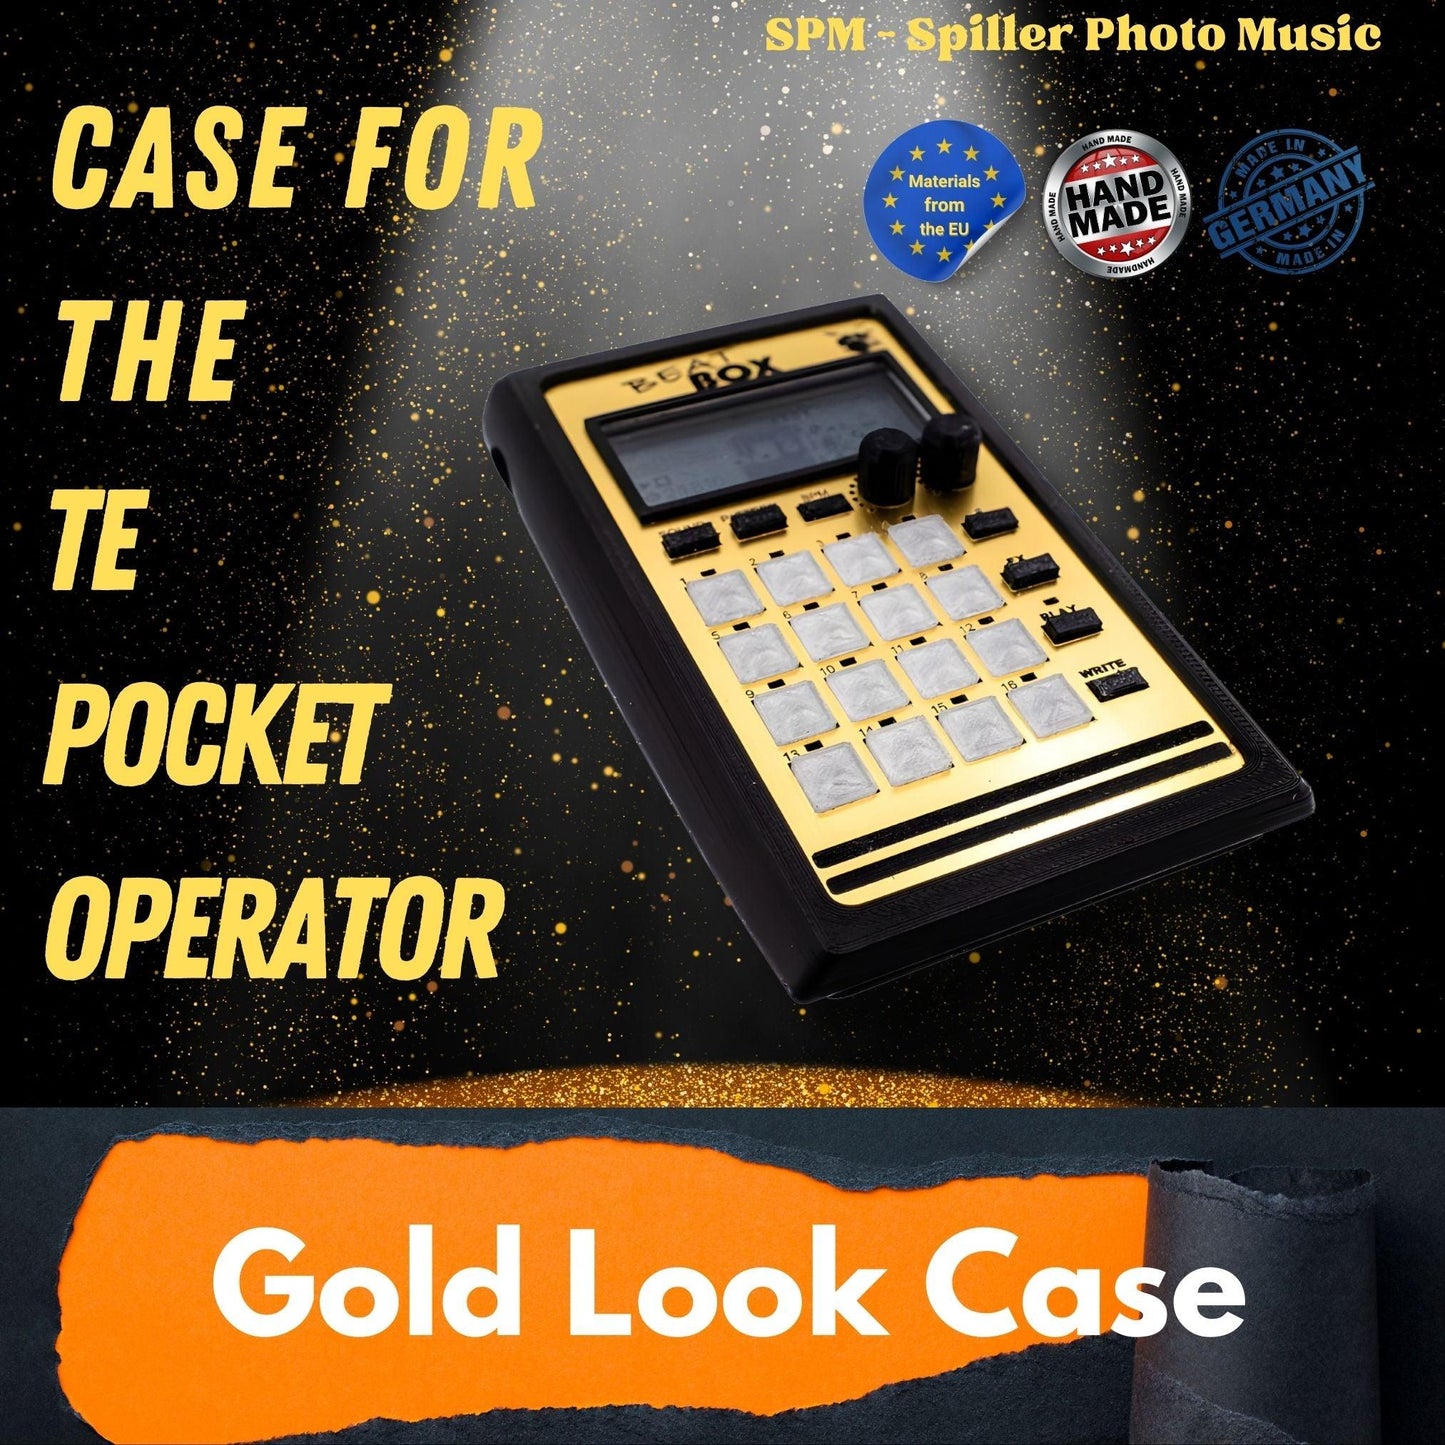 Beat Box GOLD LOOK EDITION - 3D gedrucktes Gehäuse für den Teenage Engineering Pocket Operator - SPM - Spillerphoto & Music